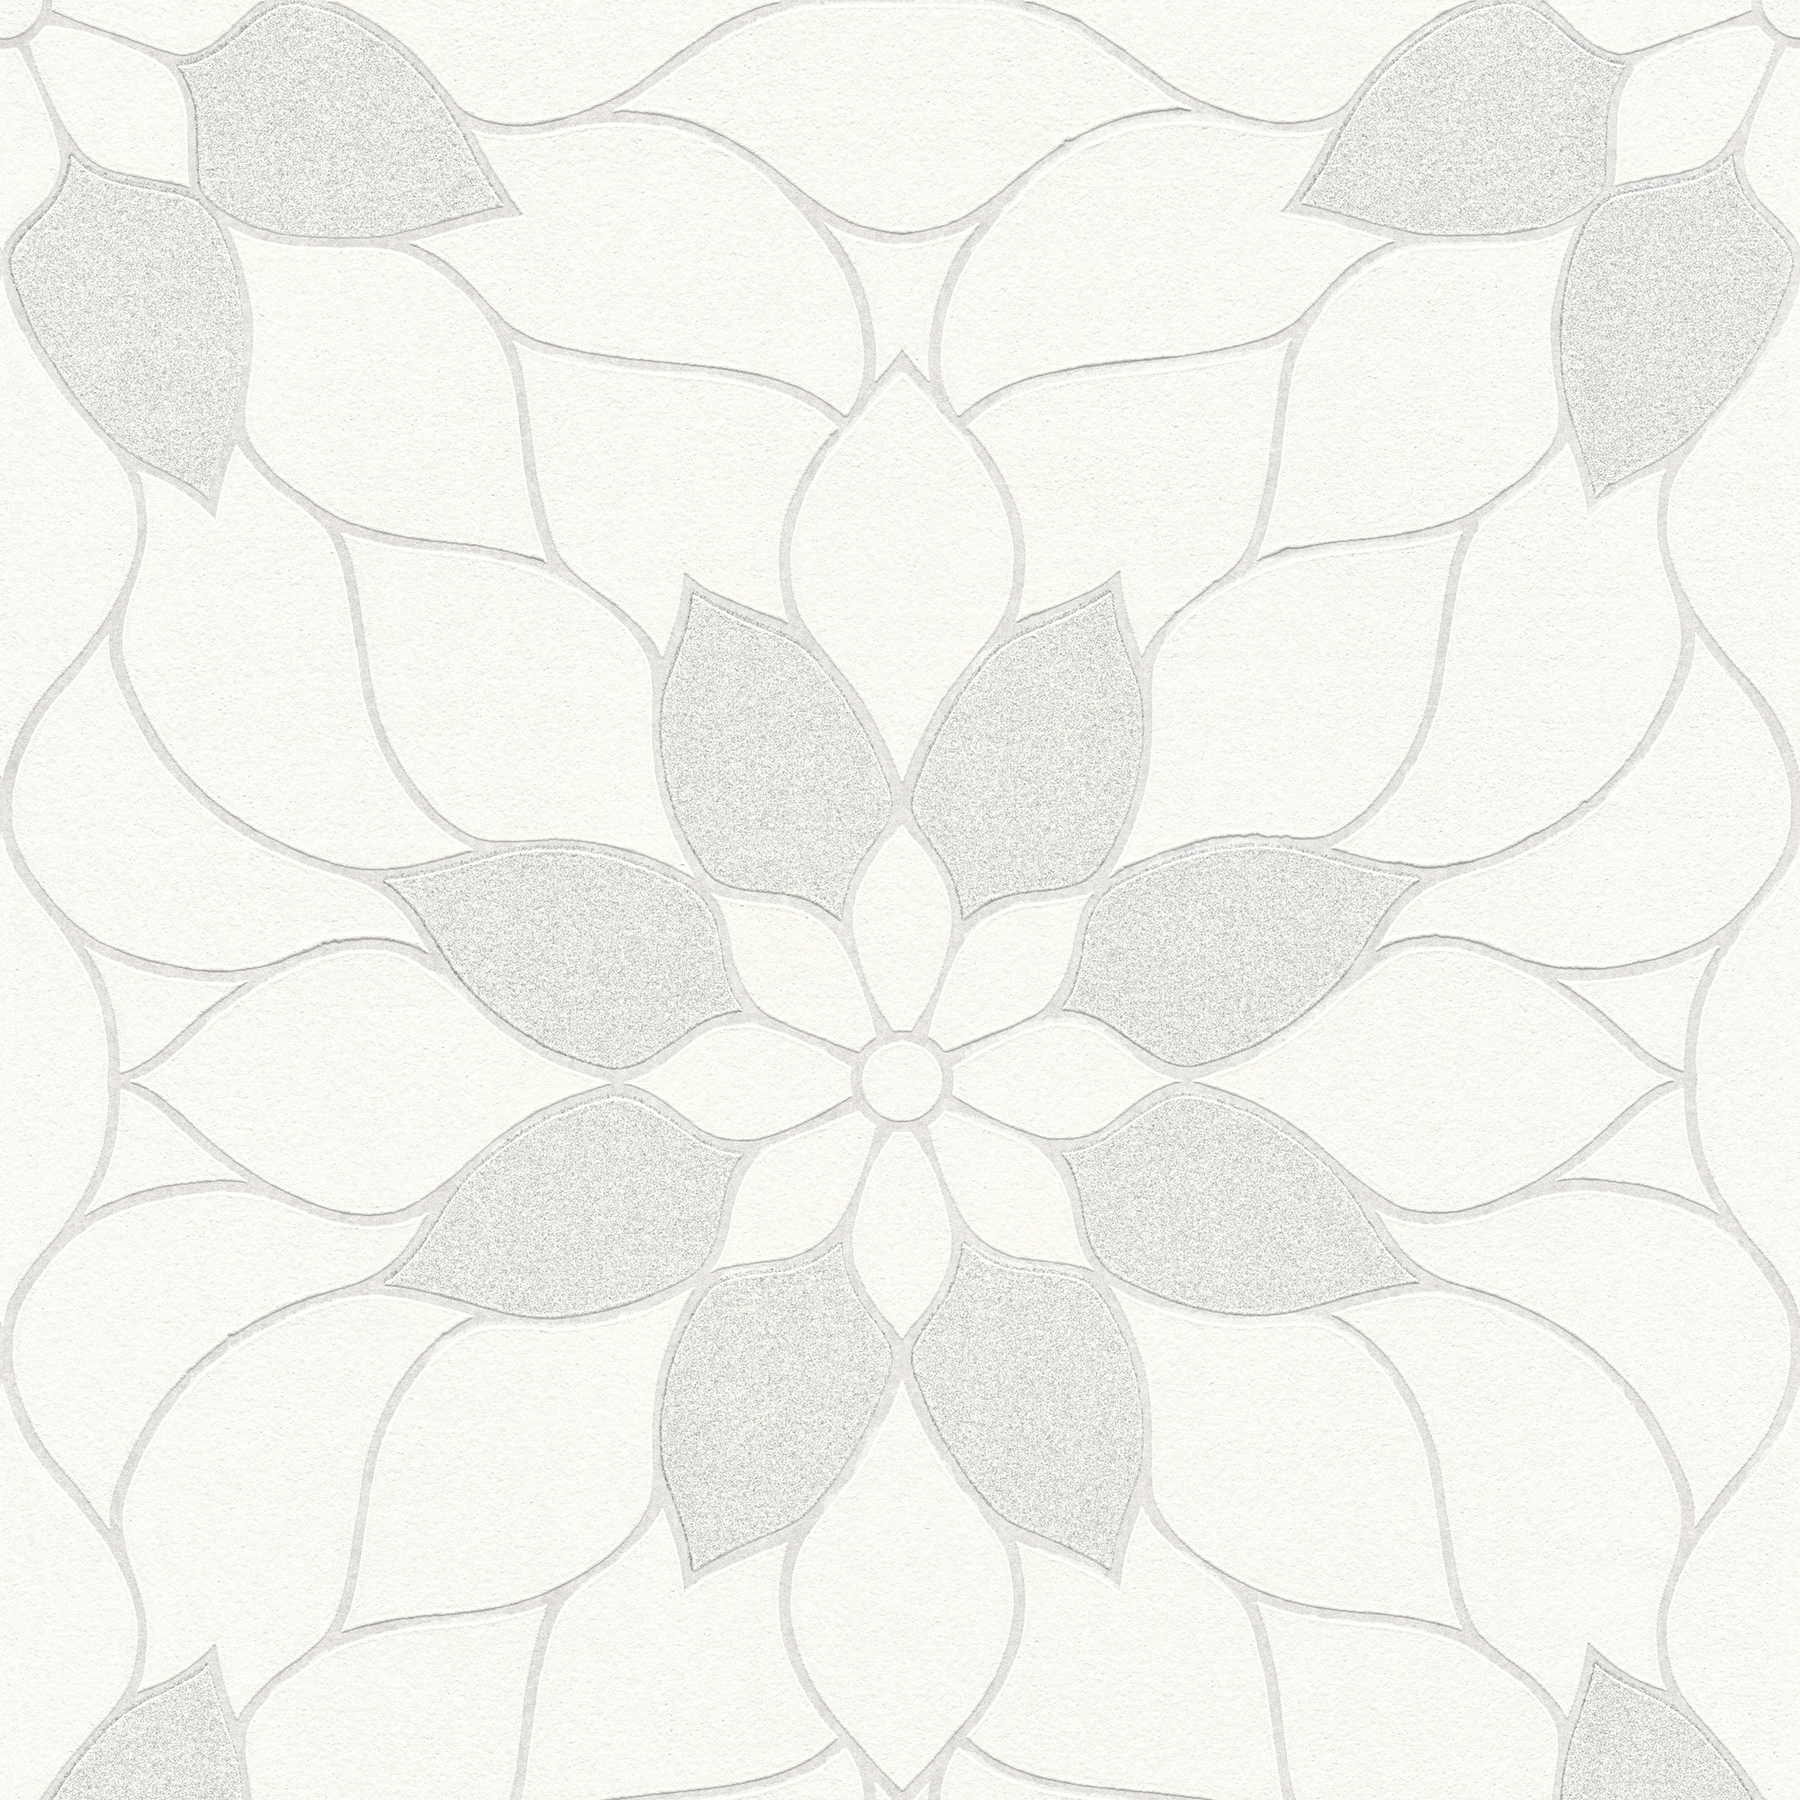         Motif floral graphique avec effet scintillant - Blanc
    